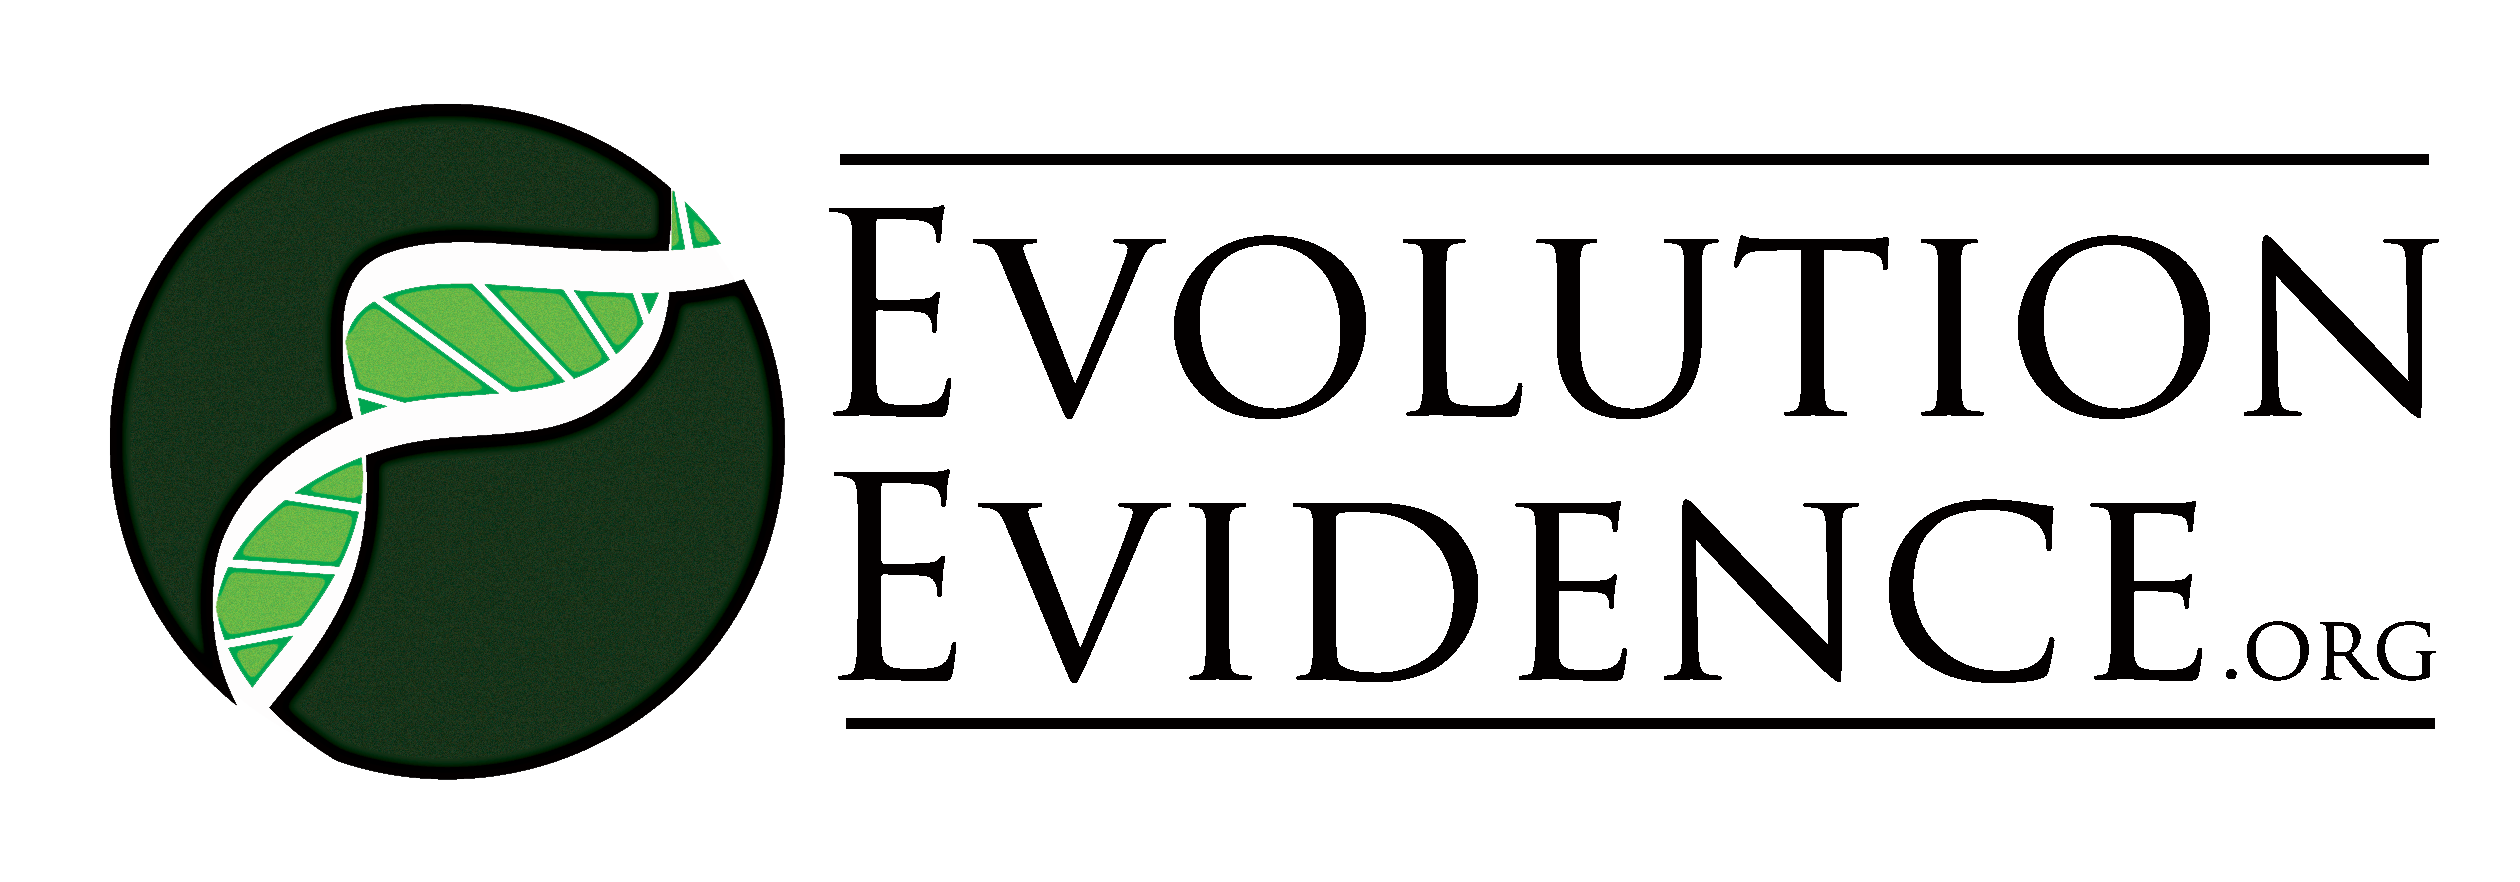 EvolutionEvidence.org: A New Method for Teaching Evolution Evidence